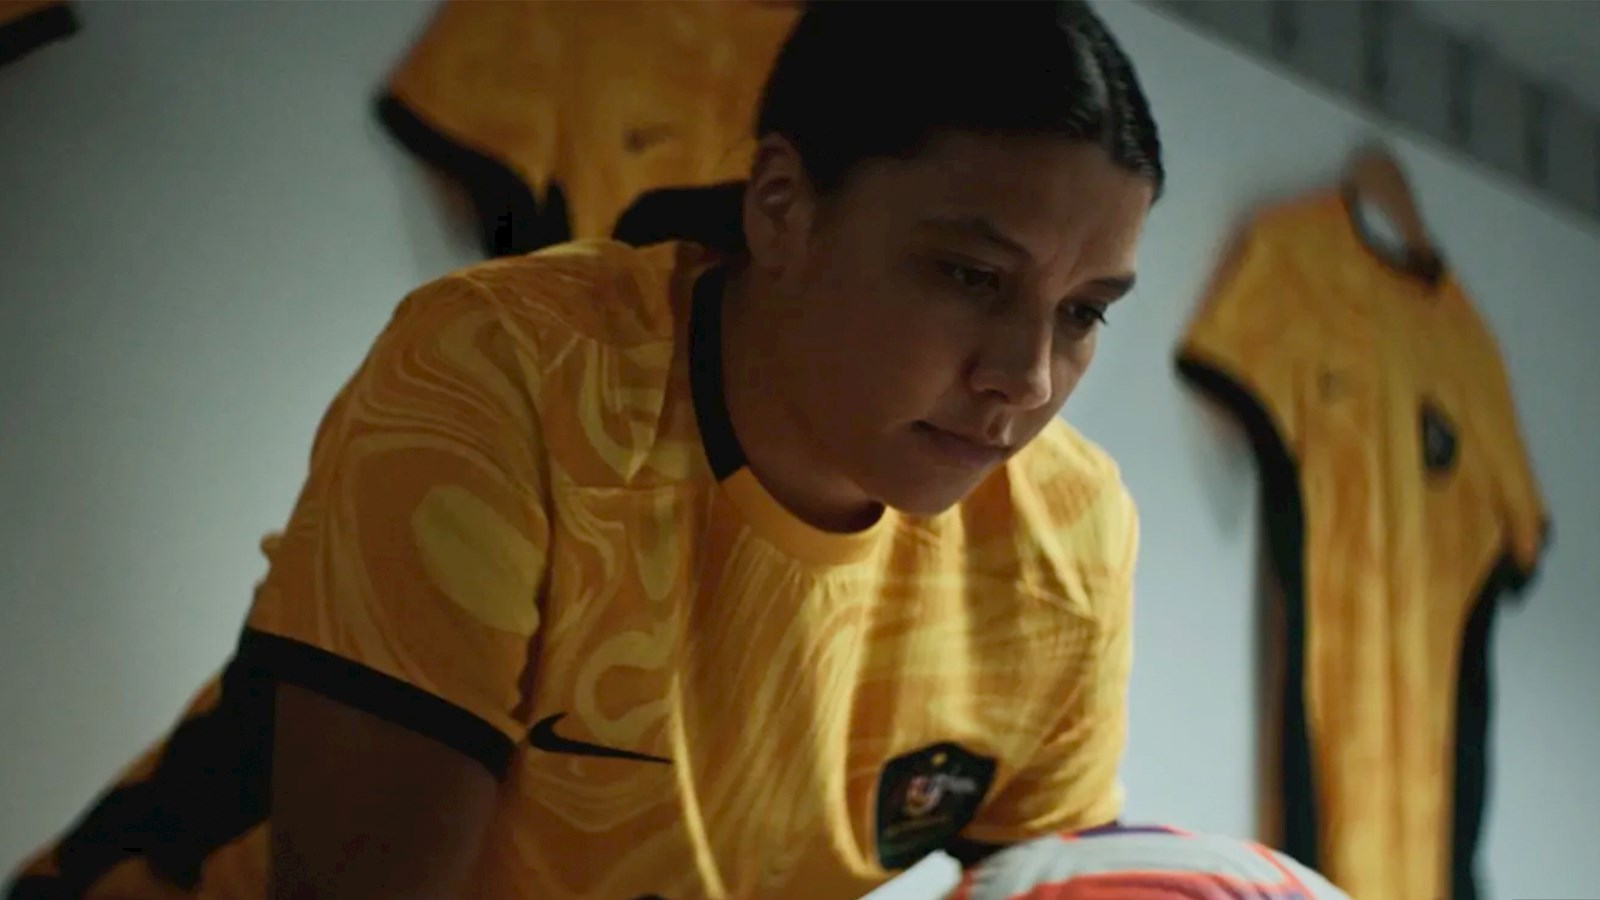 Australian female football player holding ball